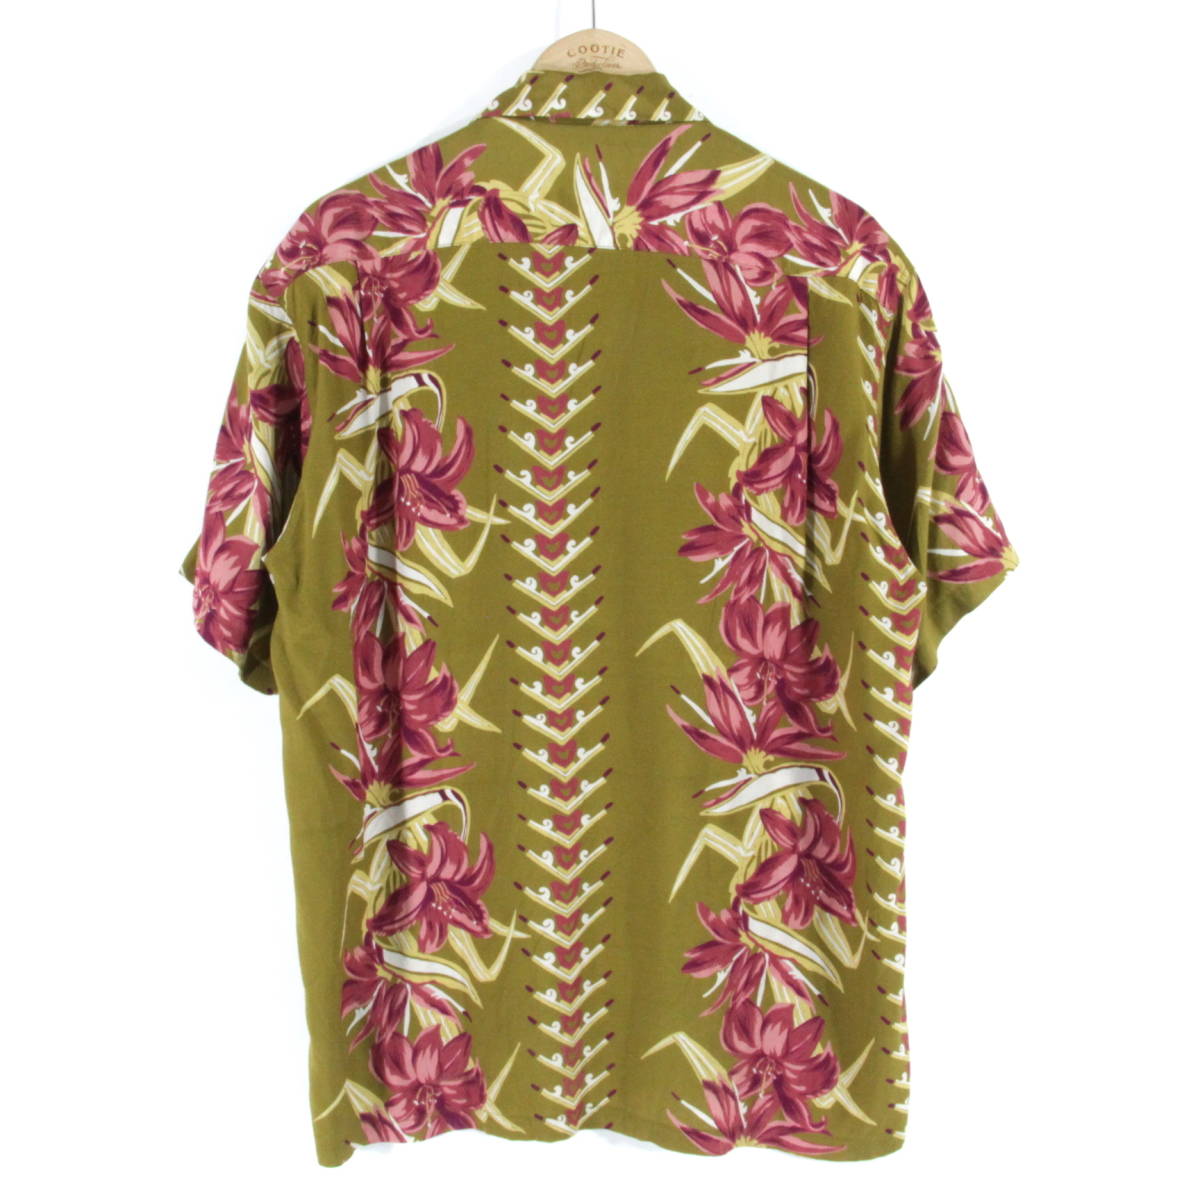 HAWAIIAN STYLE ビンテージ アロハシャツ L カーキ/ピンク 花柄 半袖 レーヨン ハワイアン ALOHA 日本製 ハワイアンスタイル